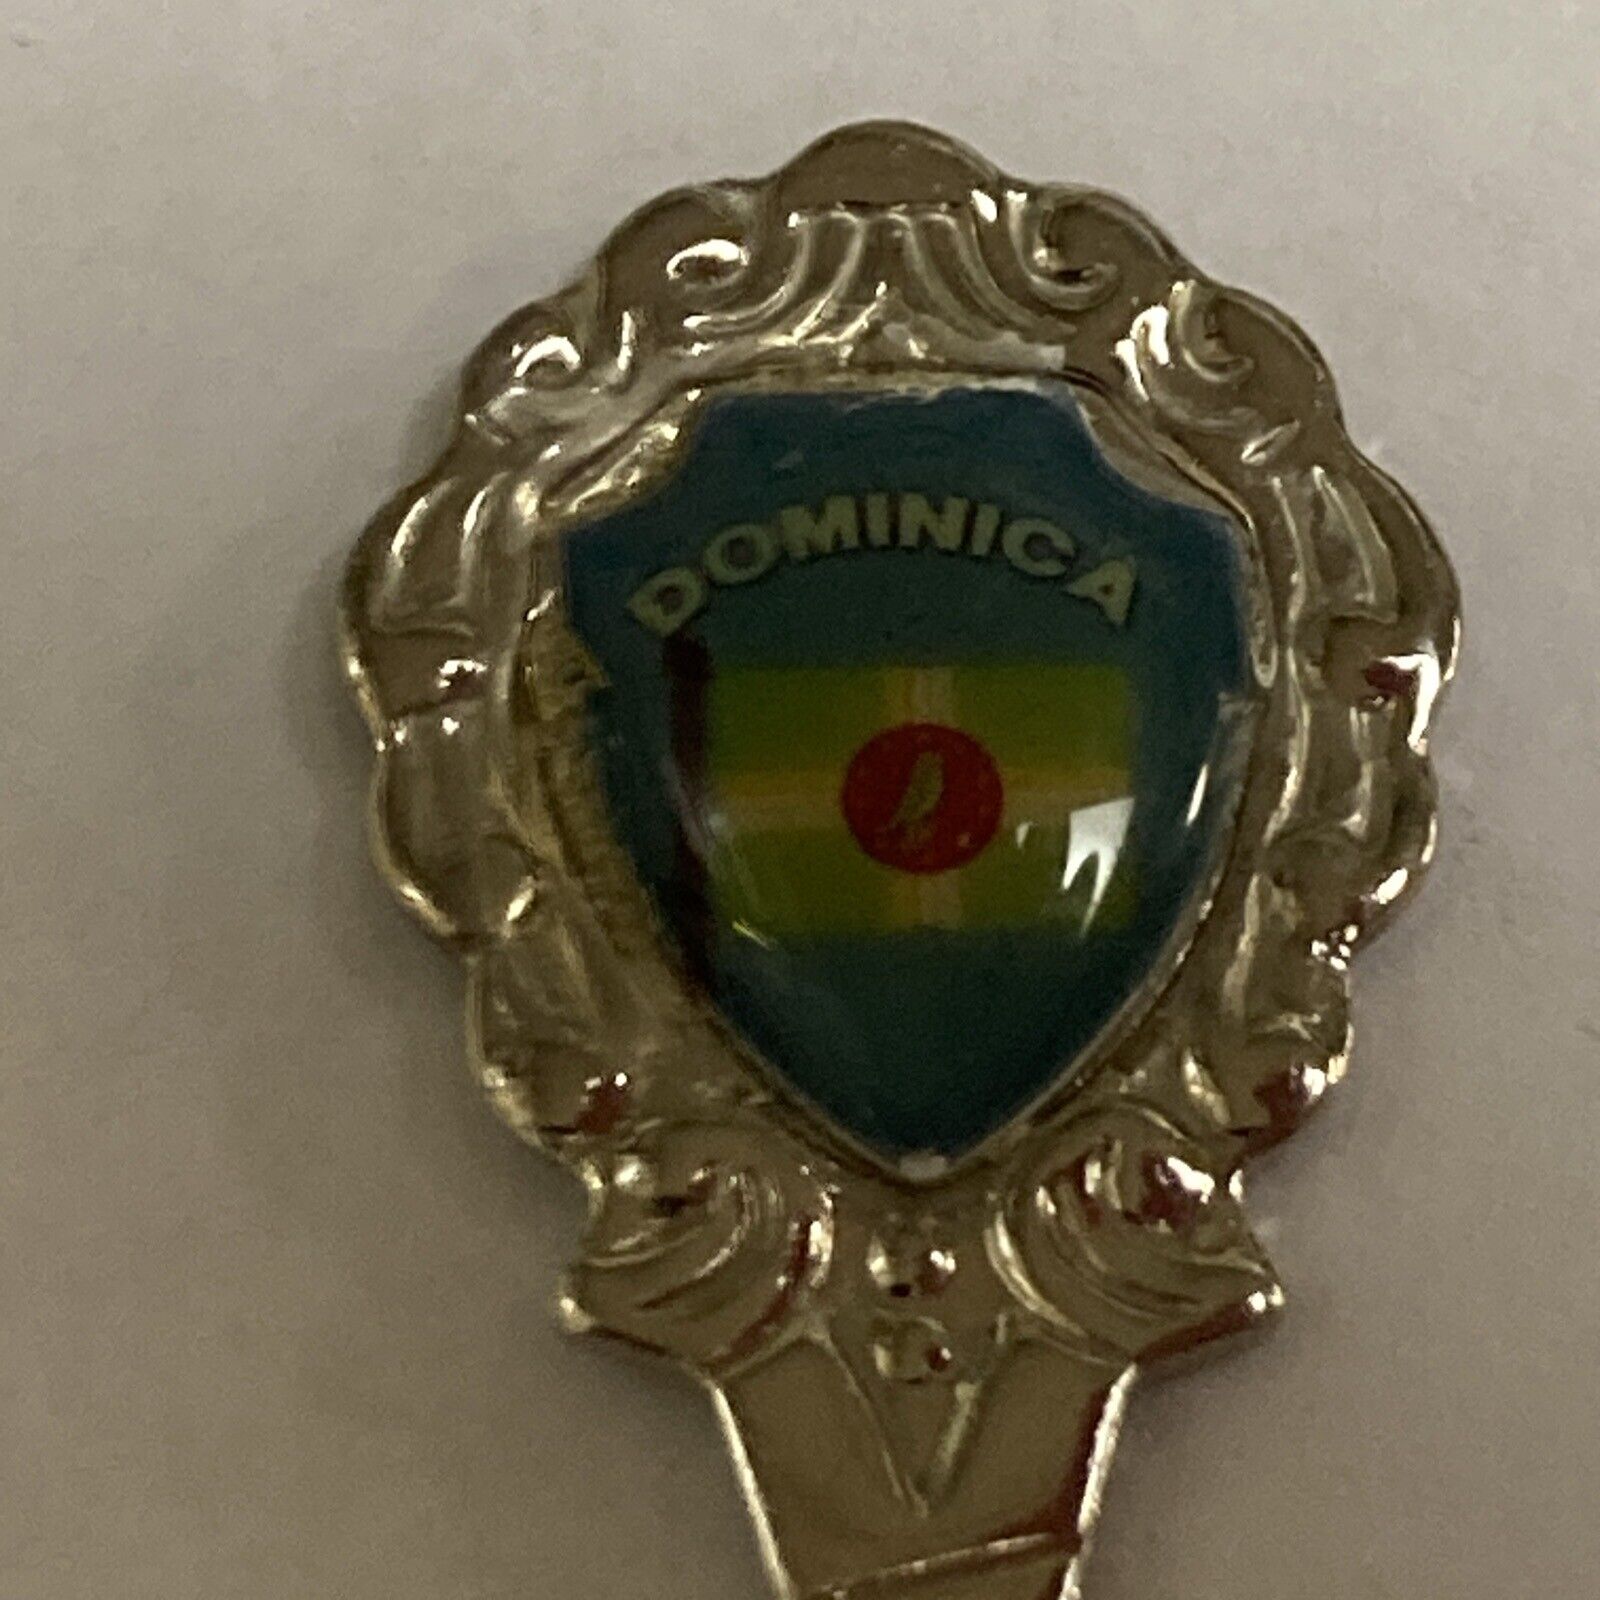 Dominica Vintage Souvenir Spoon Collectible